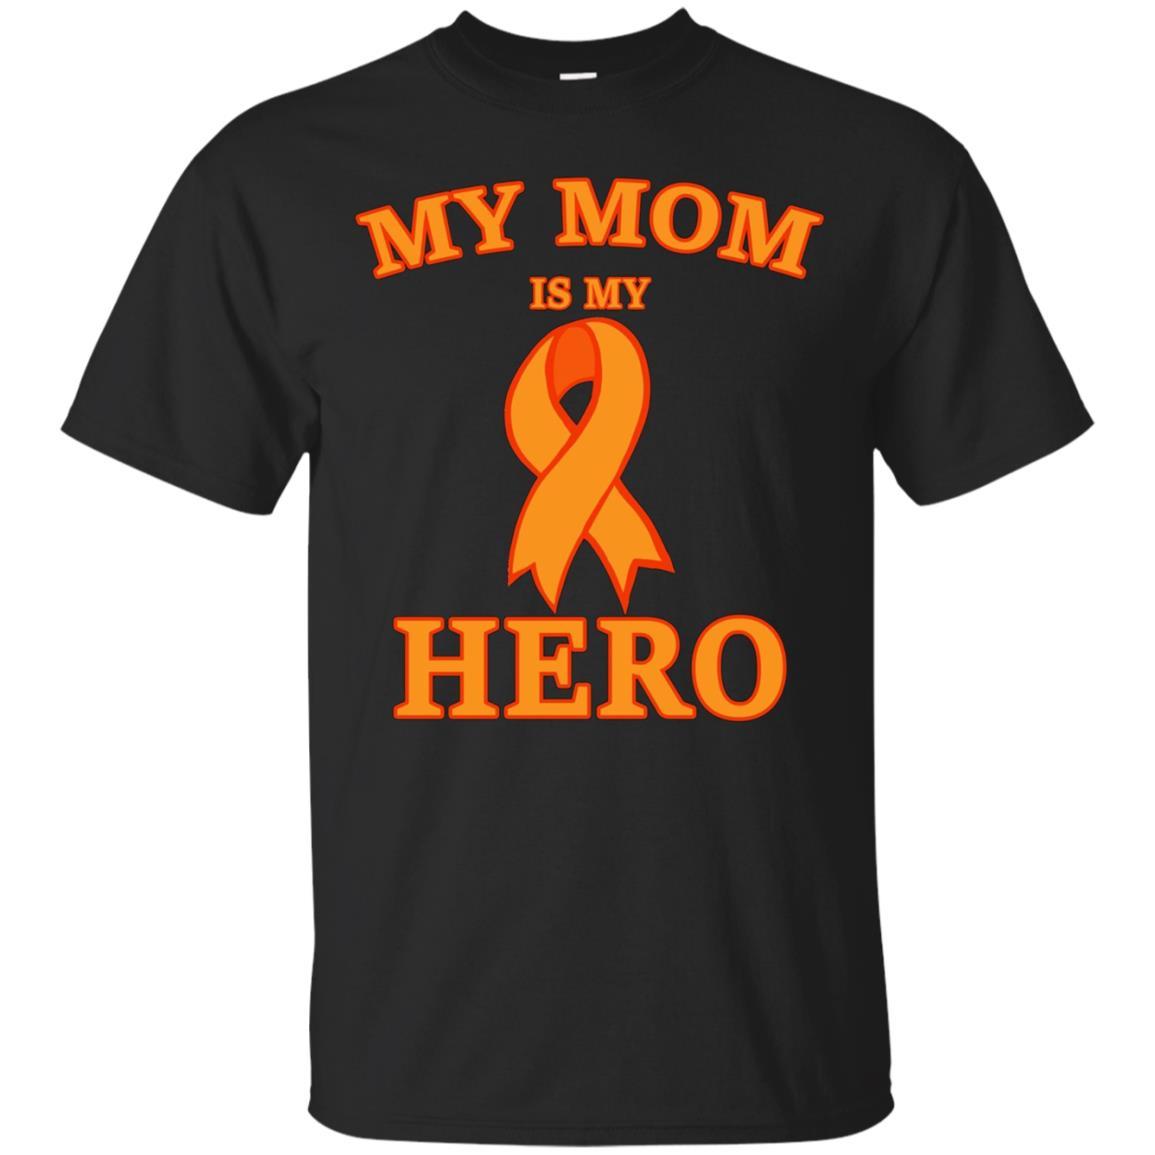 My Mom Is My Hero - Leukemia Cancer Awareness T-shirt